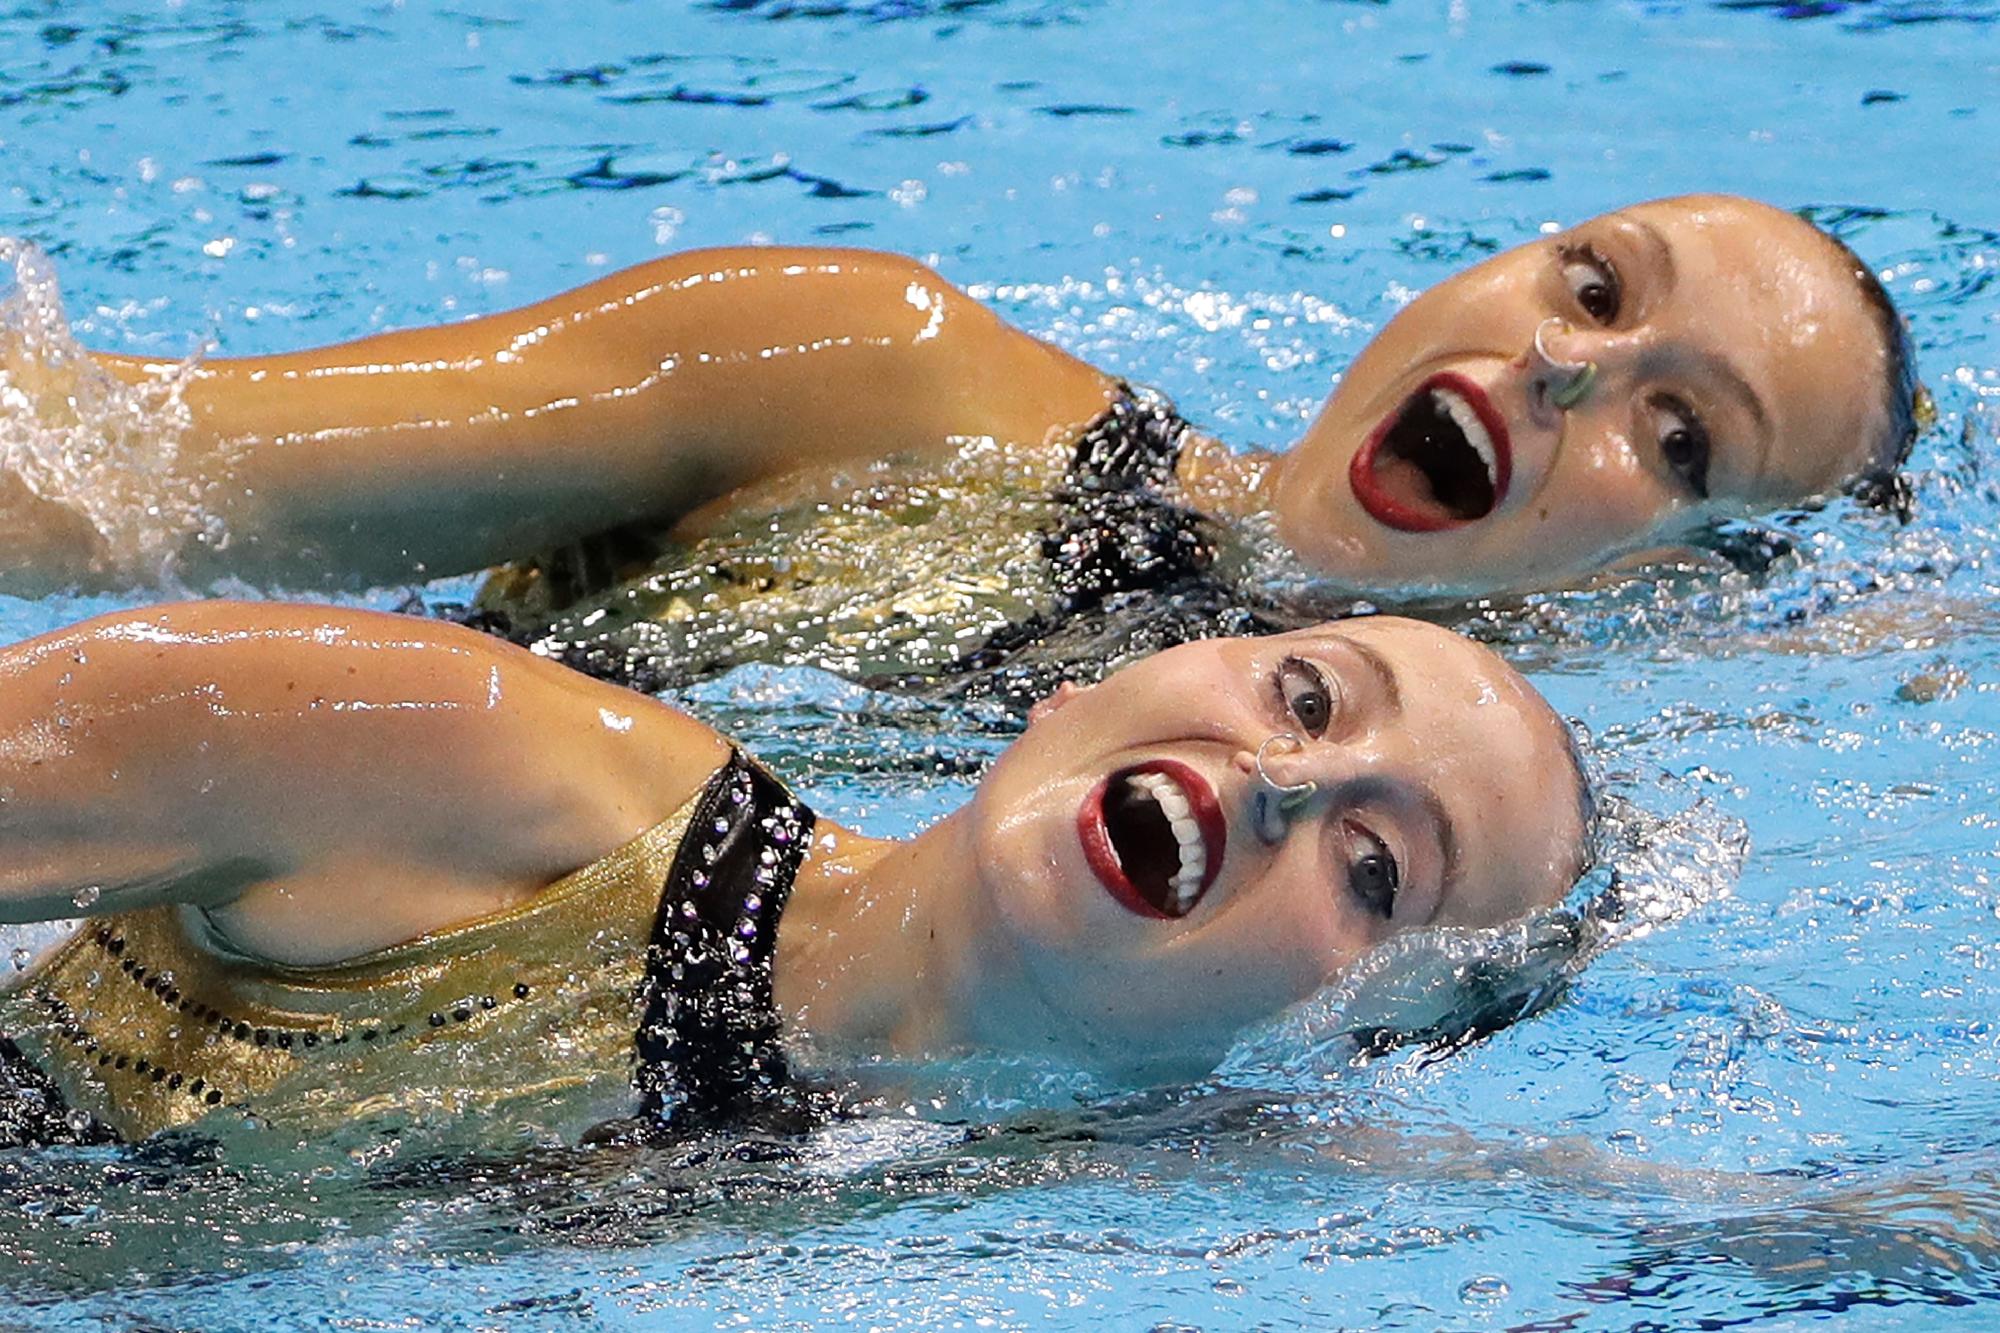 Paula Ramírez y Sara Saldana López de España compiten en los preliminares de natación técnica artística de dúo en el Campeonato Mundial de Natación en Gwangju, Corea del Sur, viernes 12 de julio de 2019. 